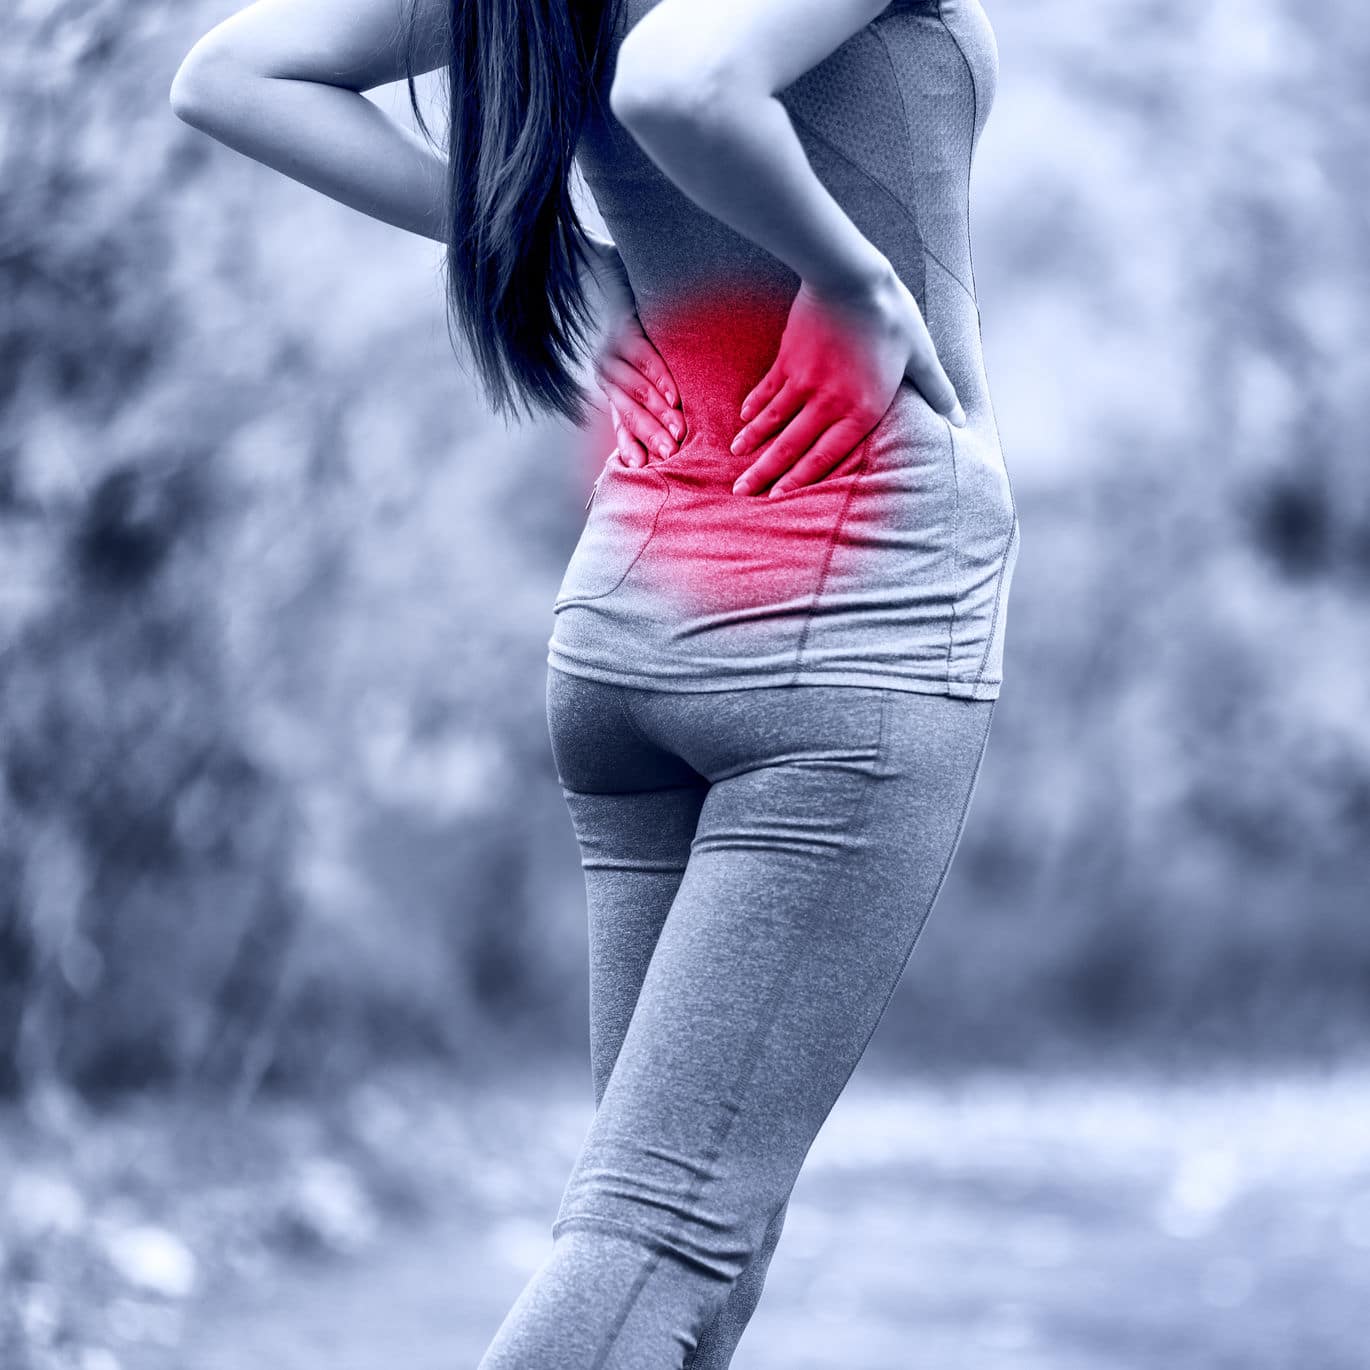 Síntomas de hernia discal: ve al doctor